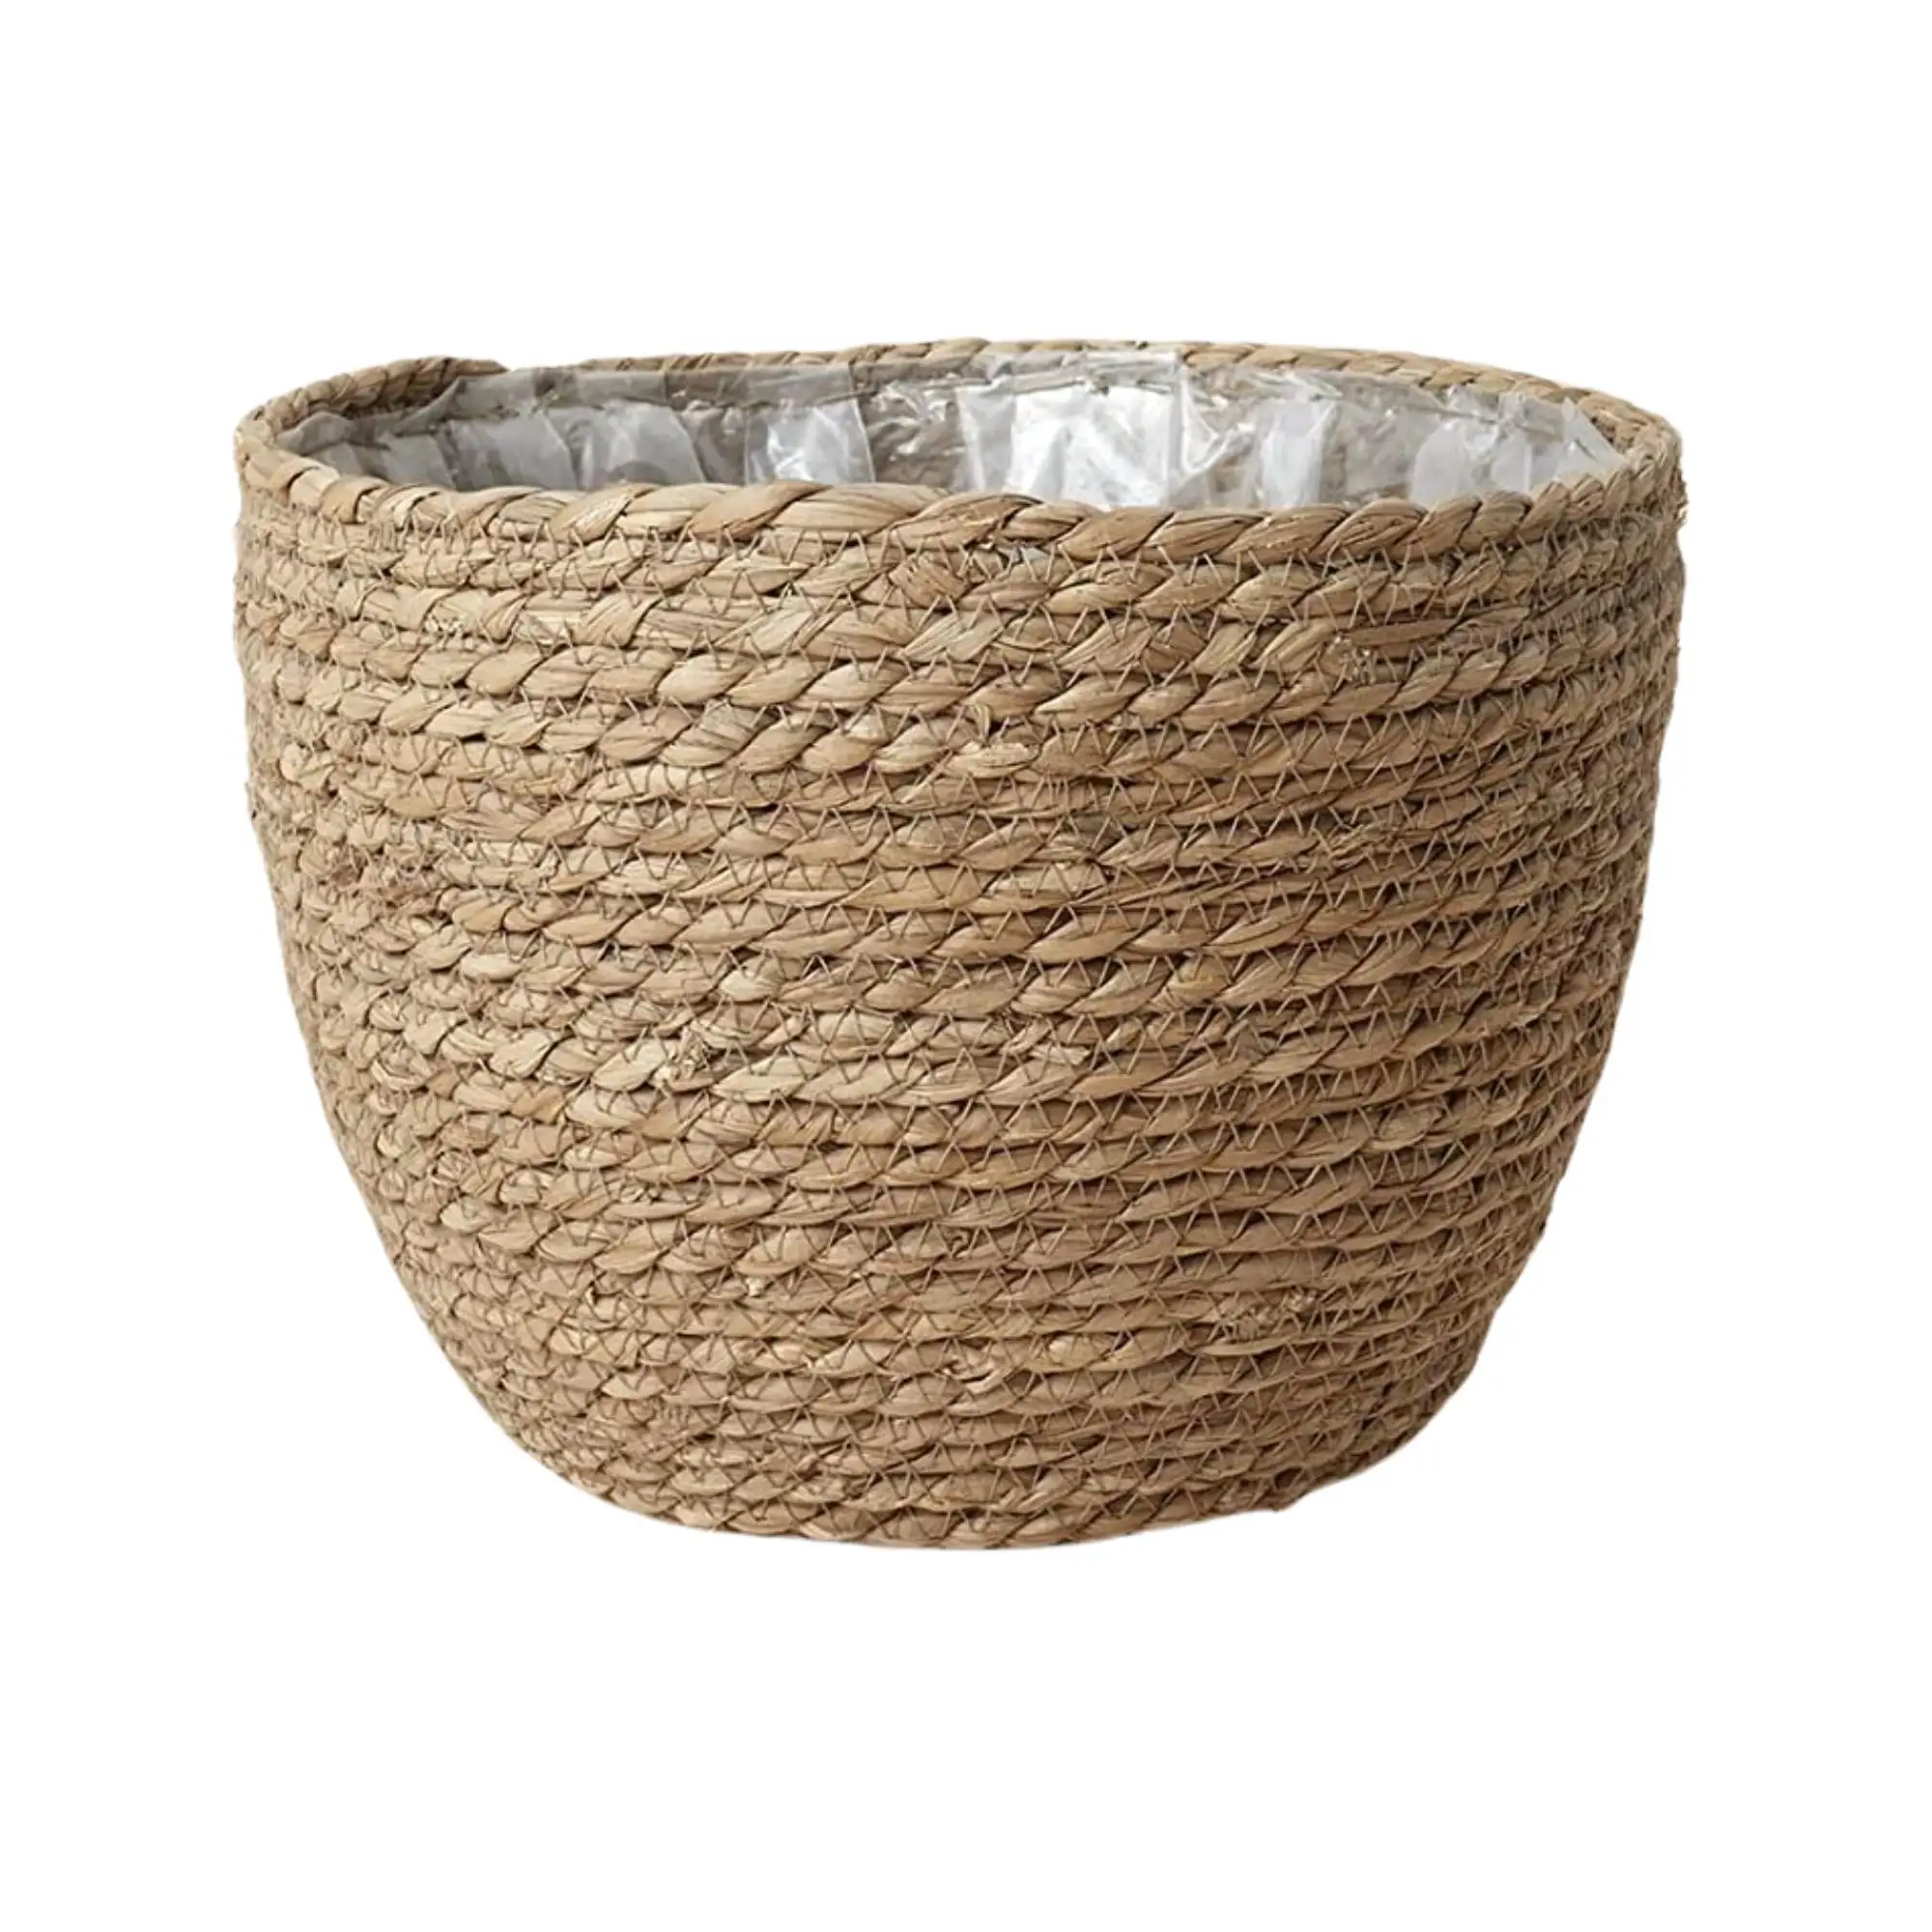 目を引く海草植木鉢バスケットプラスチックライナー付き植木鉢用のスタイリッシュな手織りプランターカバー